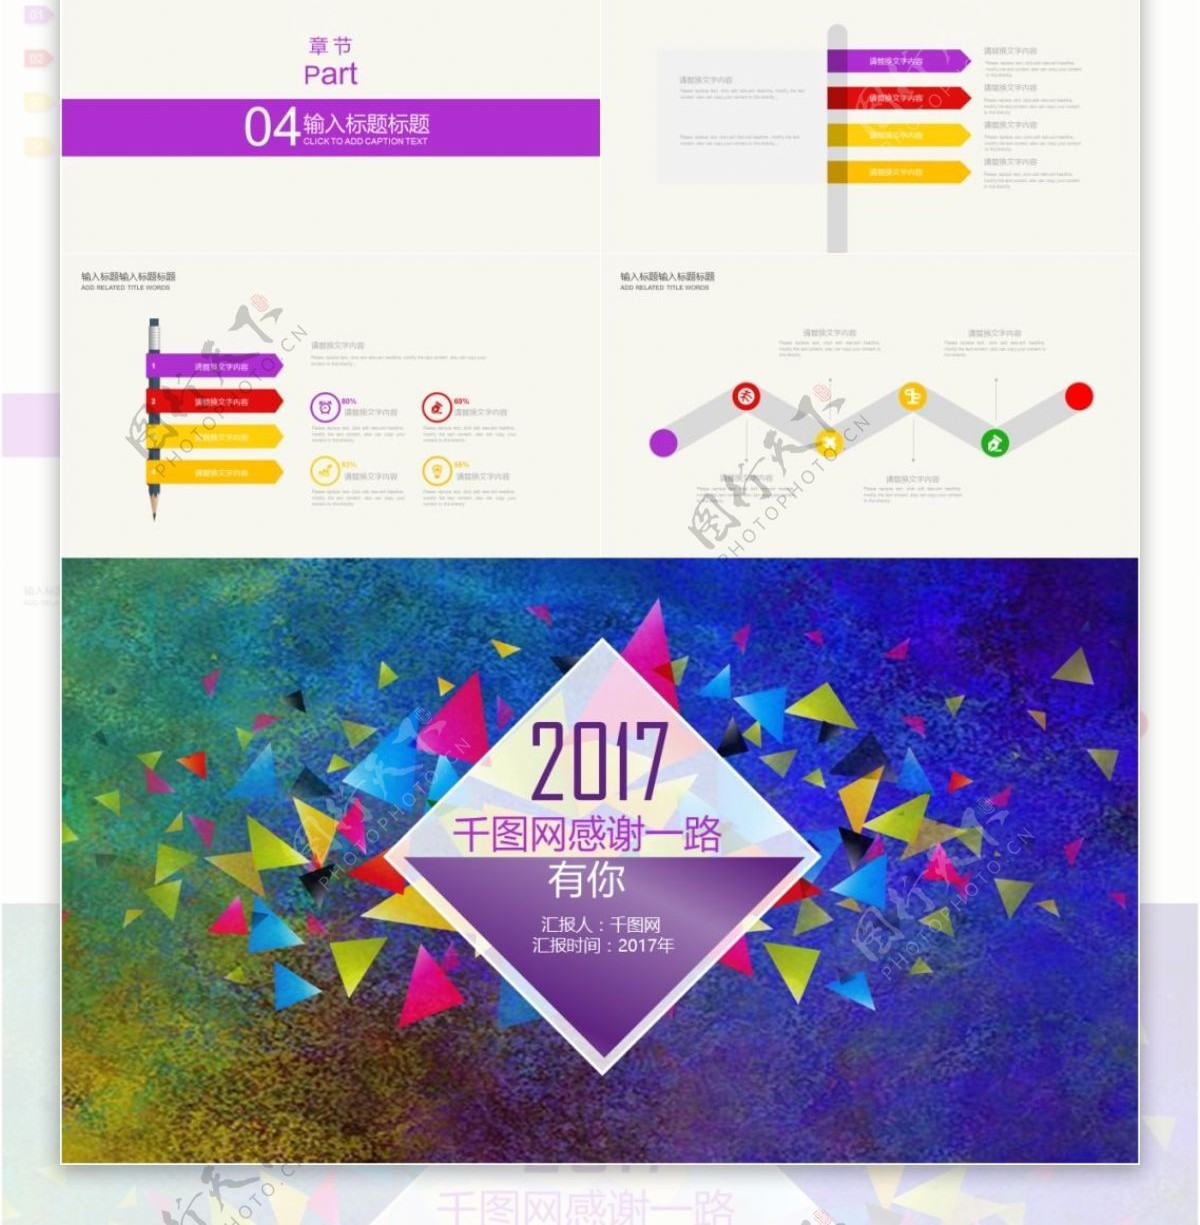 2017紫色大气商务汇报模板ppt模板设计